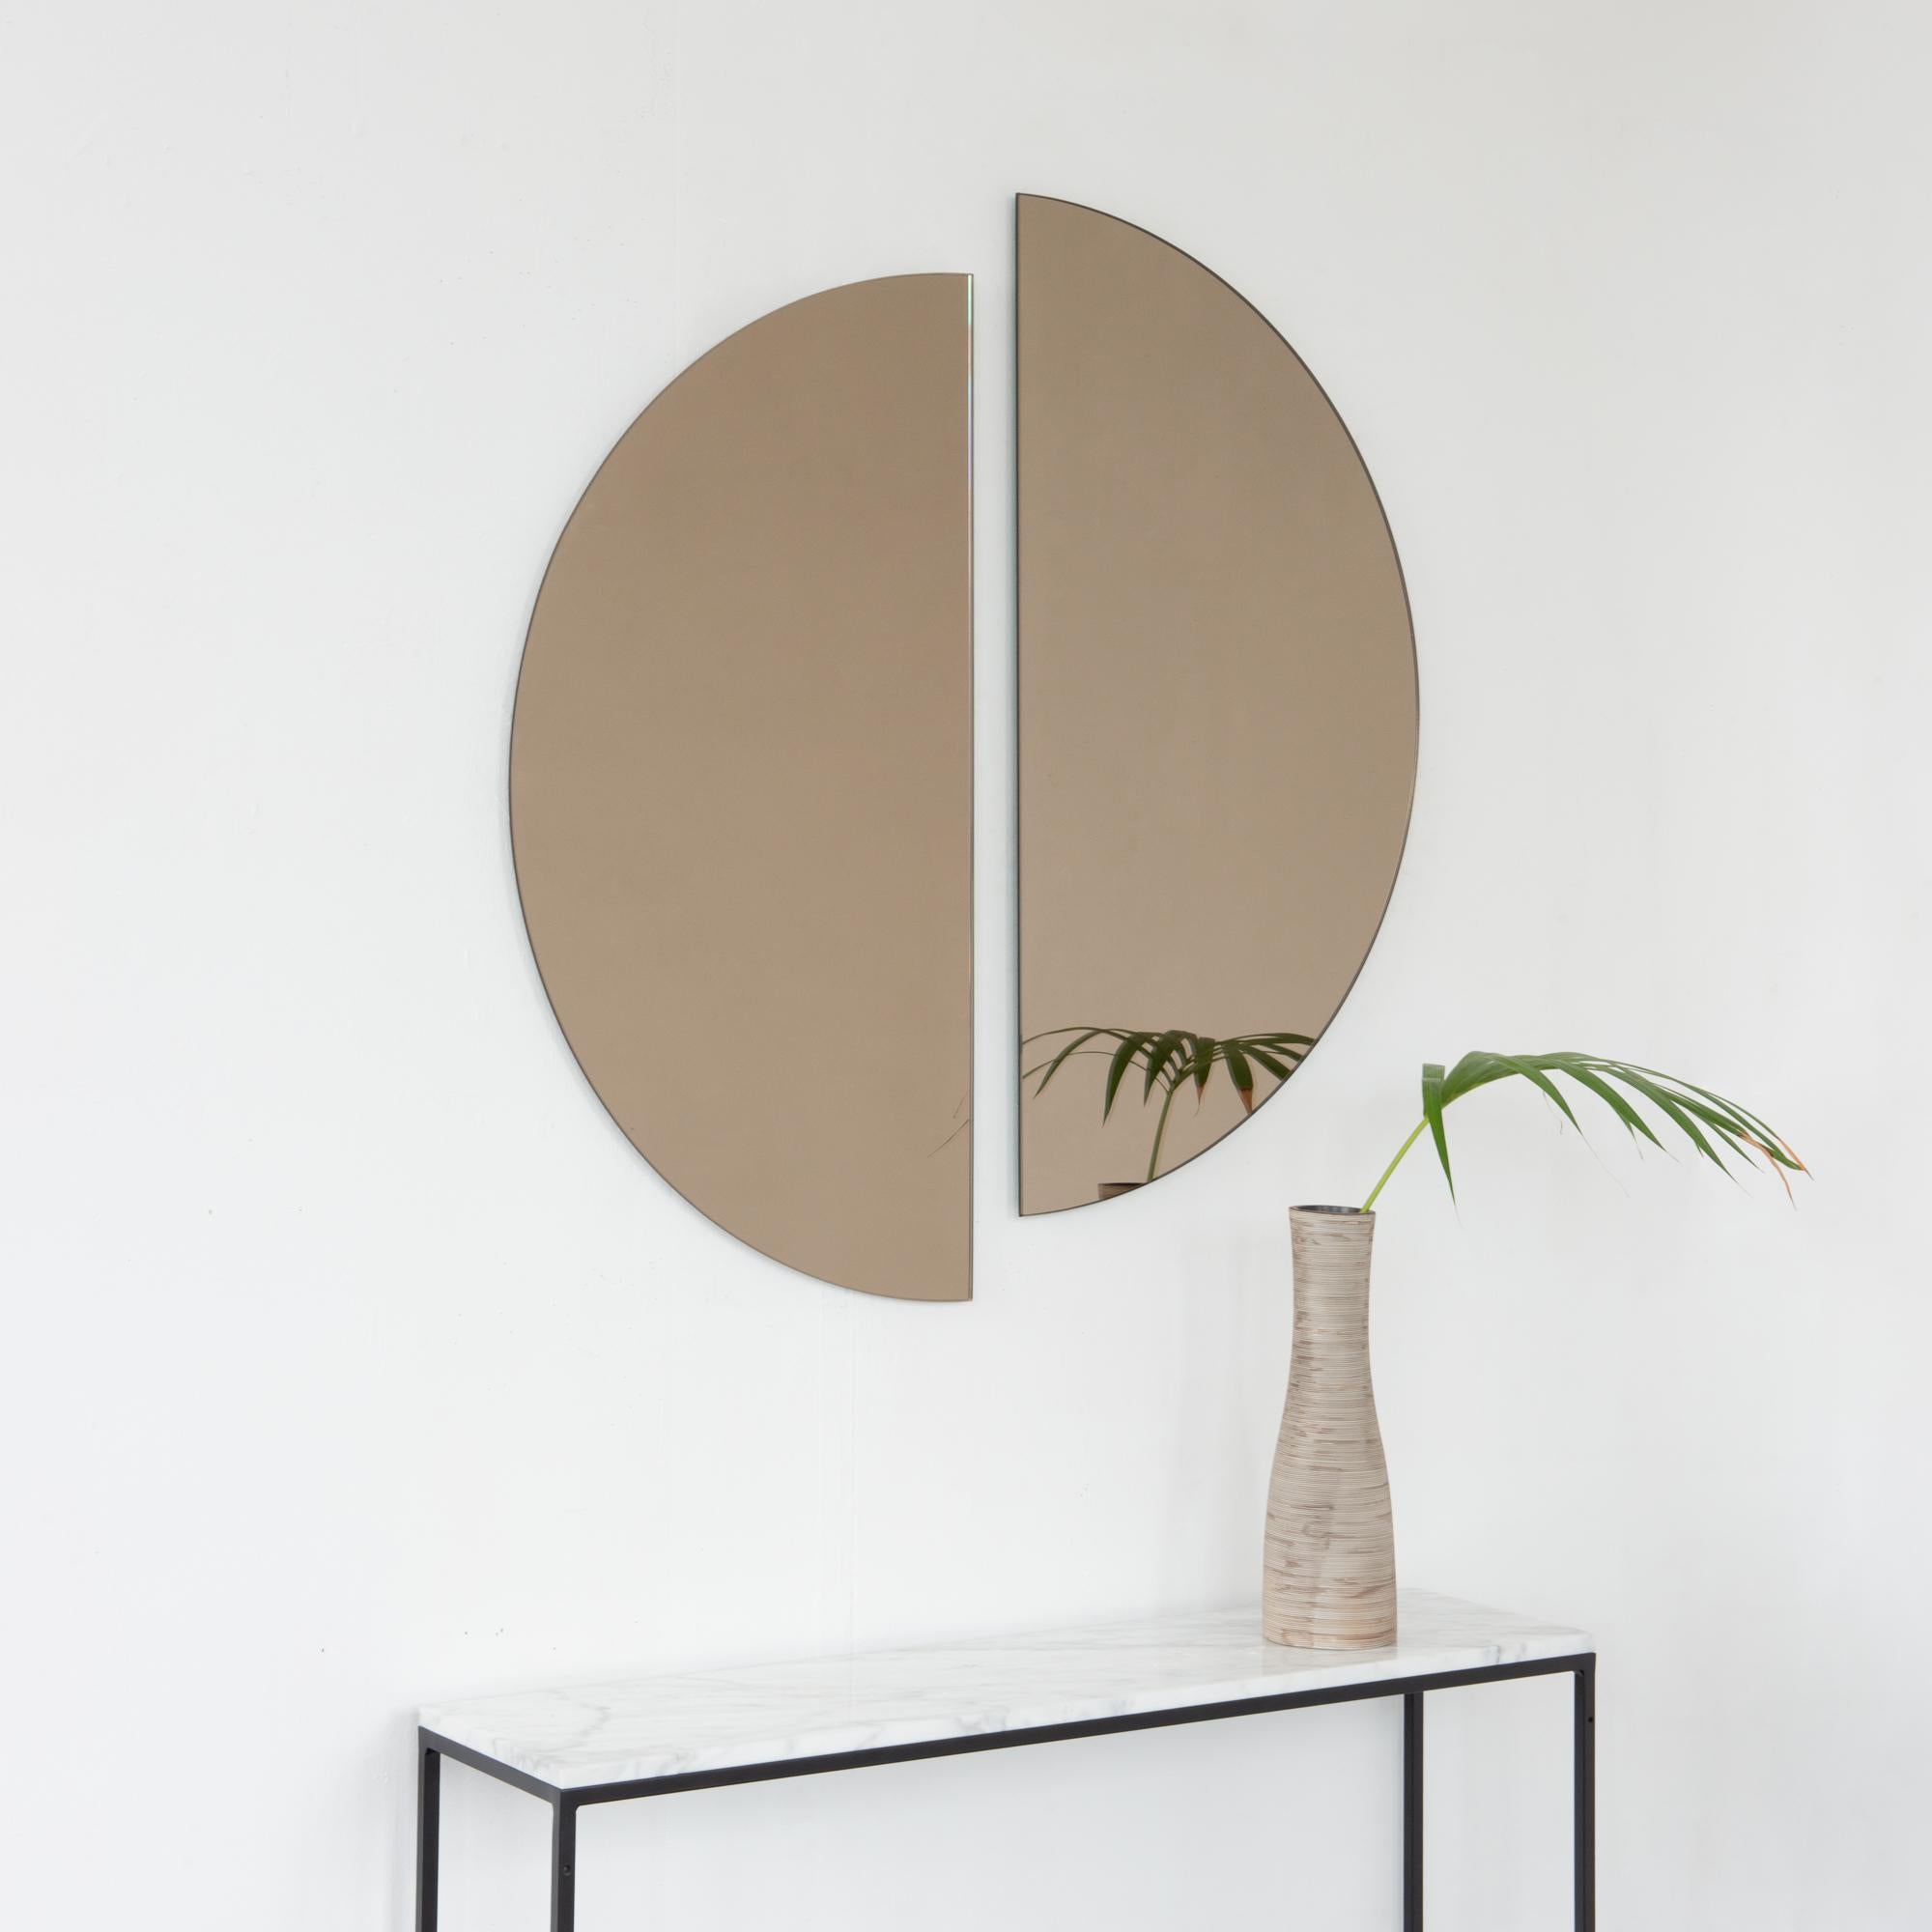 Set aus zwei minimalistischen halbmondförmigen Luna™-Spiegeln in Bronze mit Schwebeeffekt. Ausgestattet mit einem hochwertigen Aufhängesystem für eine flexible Installation in 4 verschiedenen Richtungen. Entworfen und hergestellt in London, UK.